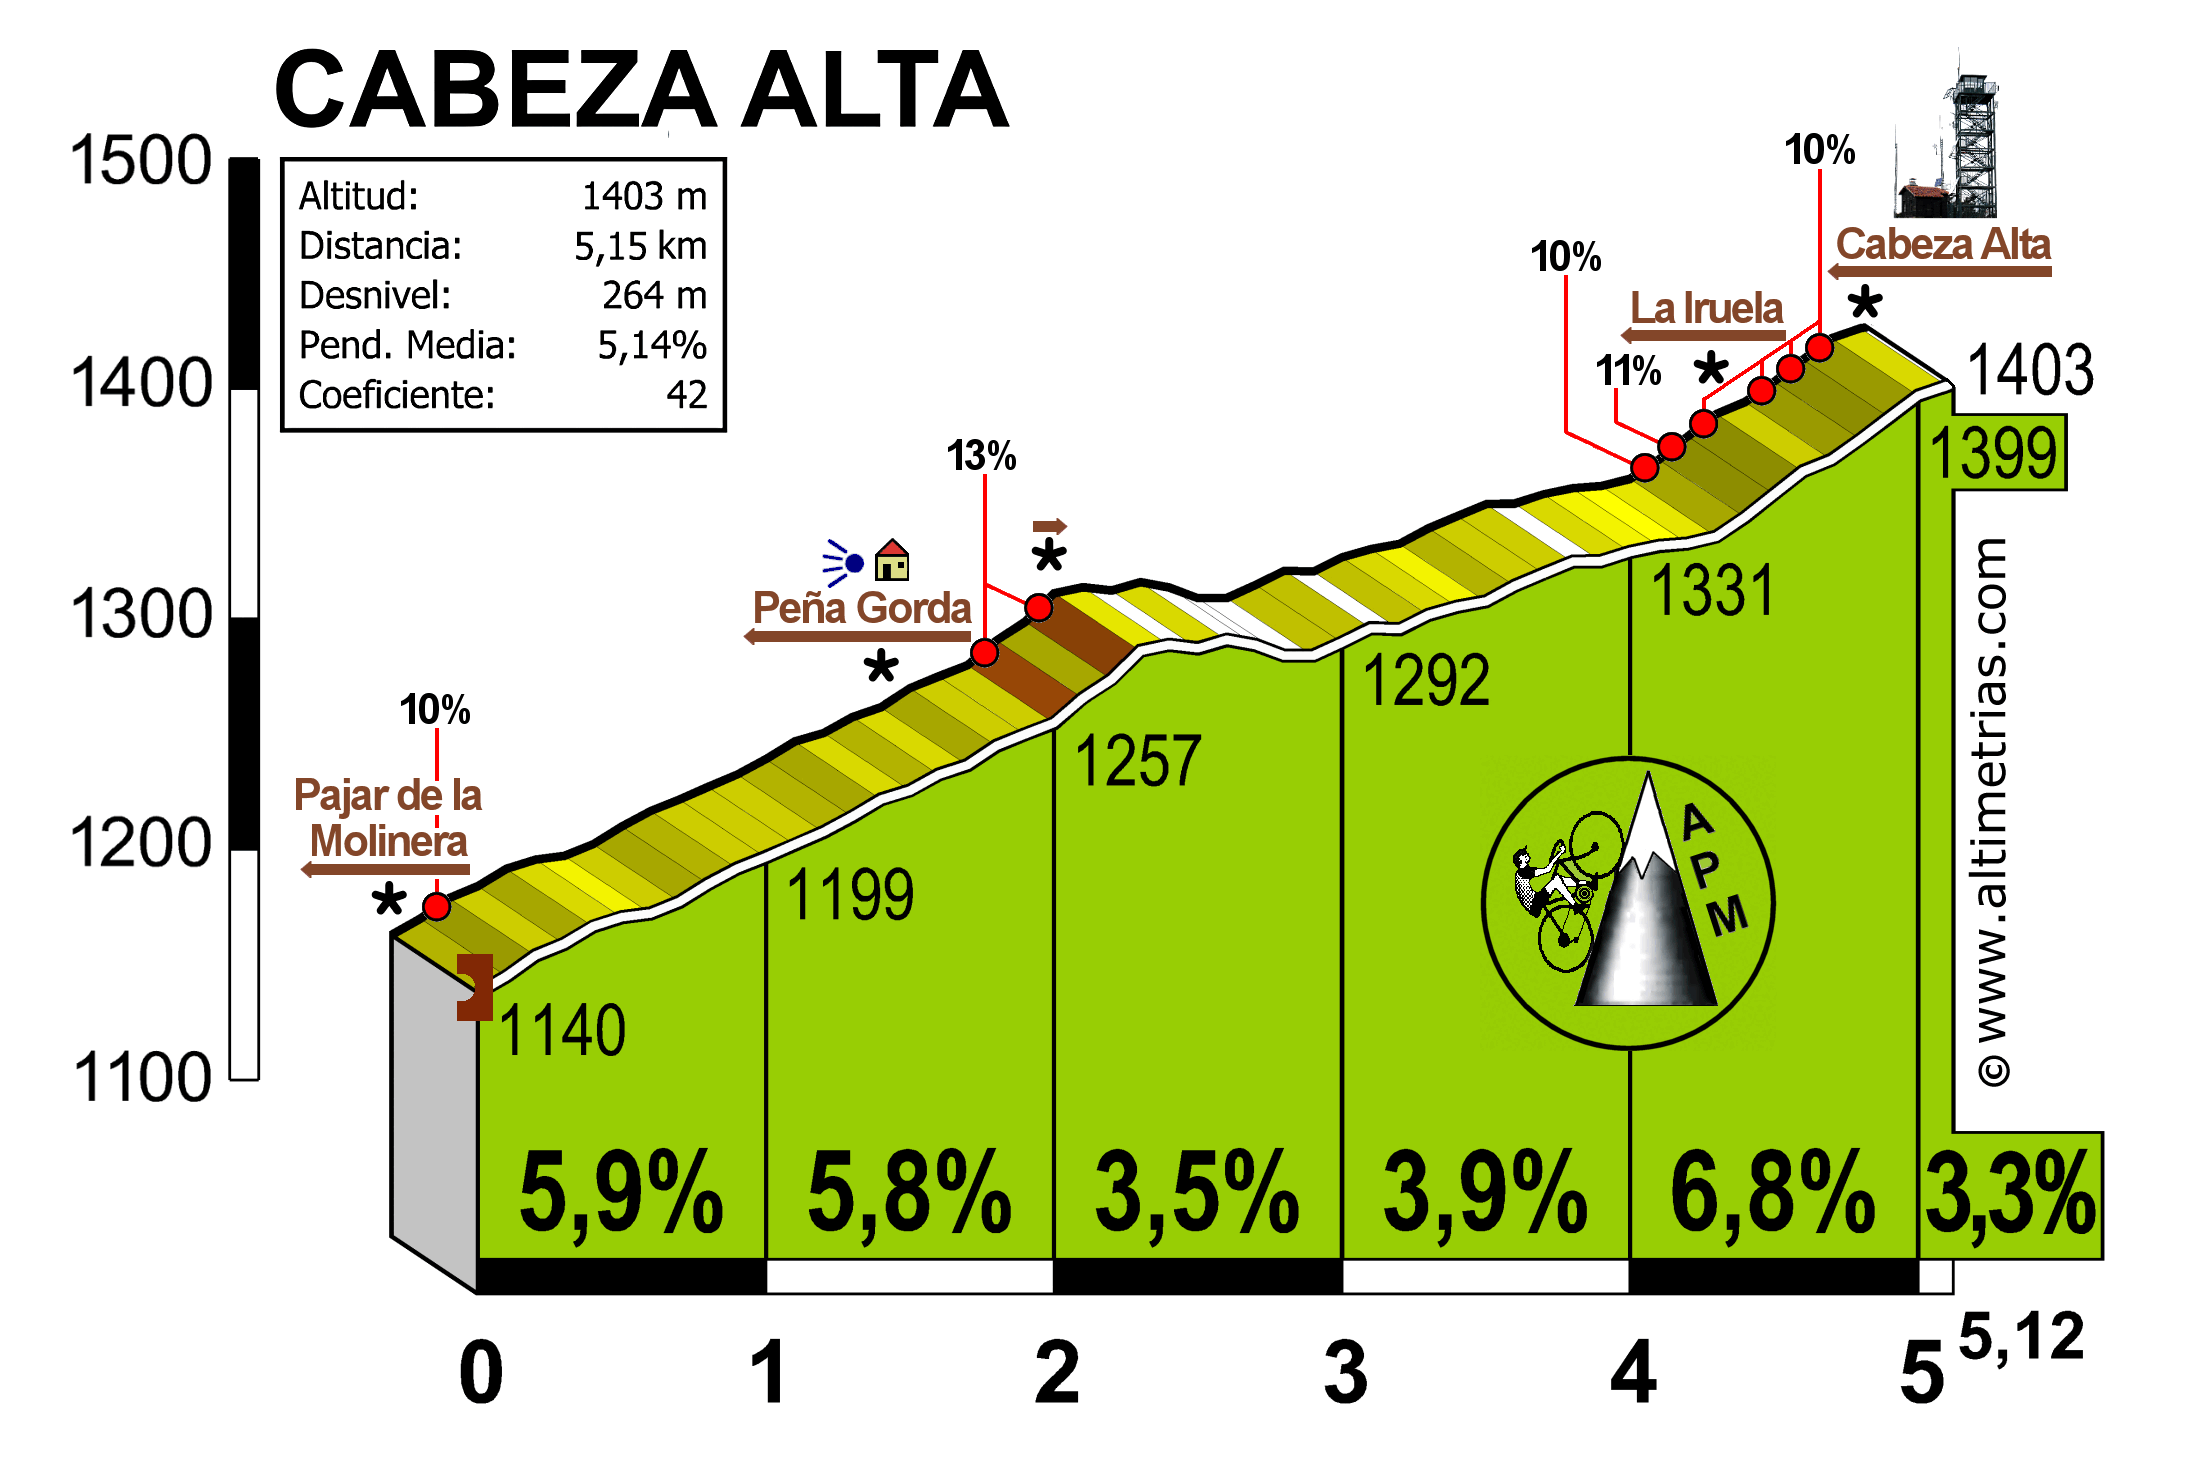 Cabeza Alta